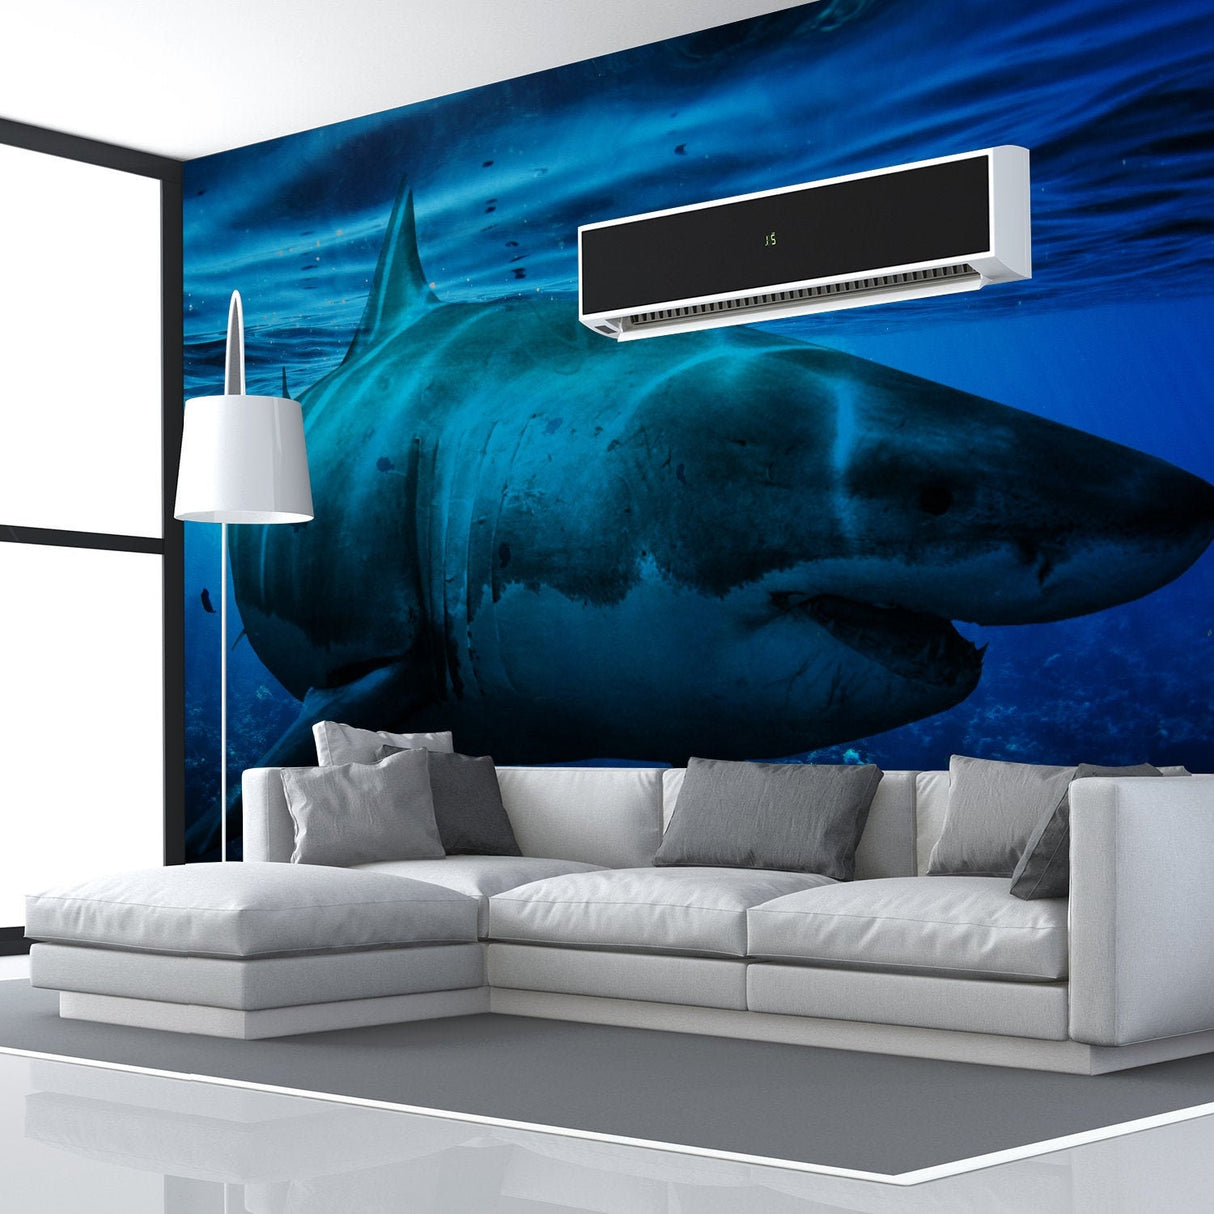 Ocean Shark Wallpaper Art Decal - Underwater 3d Decor Wall Paper Removable Sticker